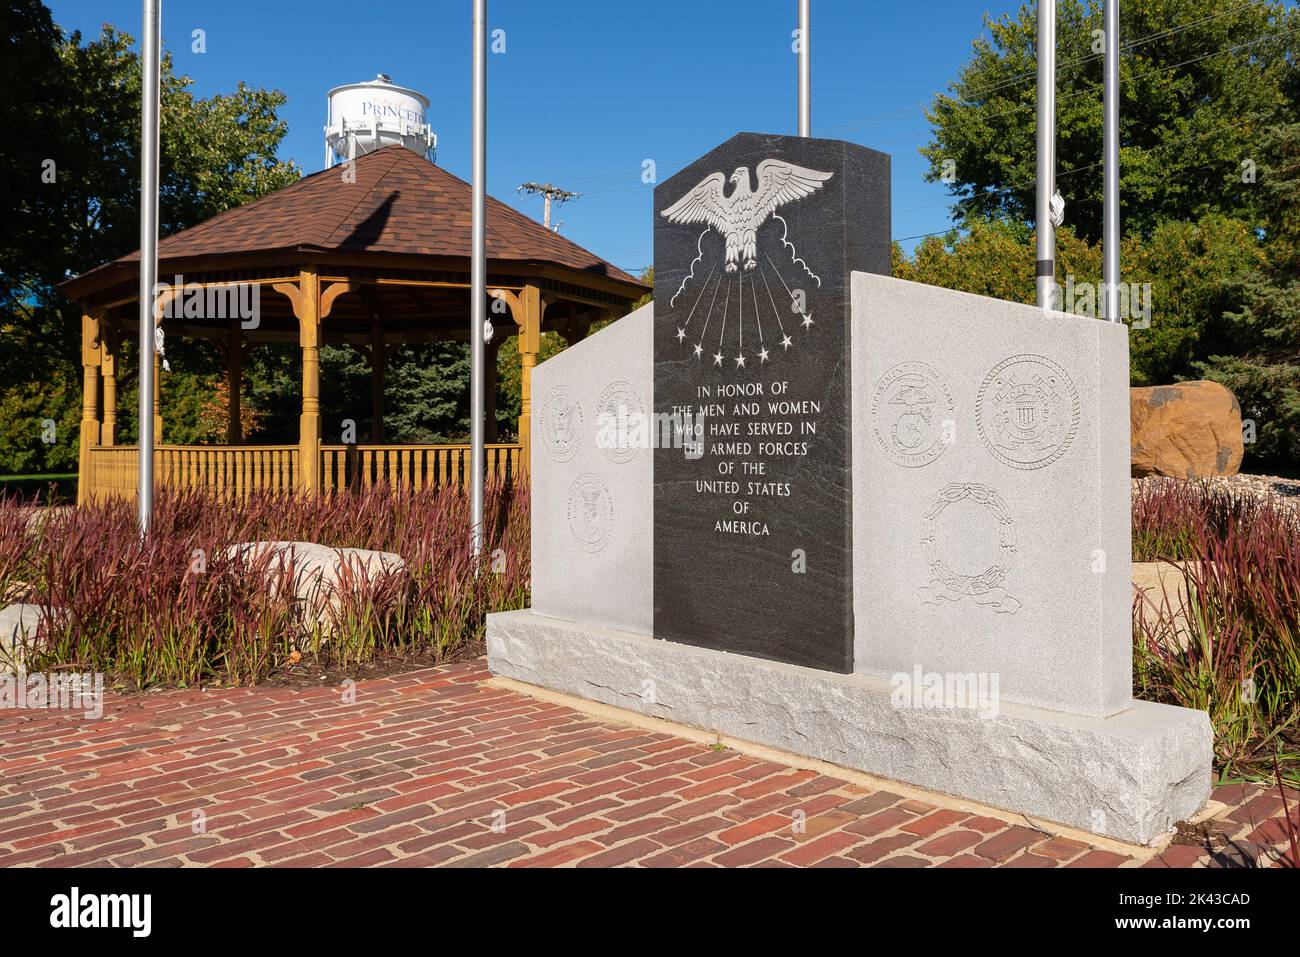 Princeton, Illinois - United States - September 28th, 2022: Veterans Memorial in Princeton, Illinois, USA. Stock Photo